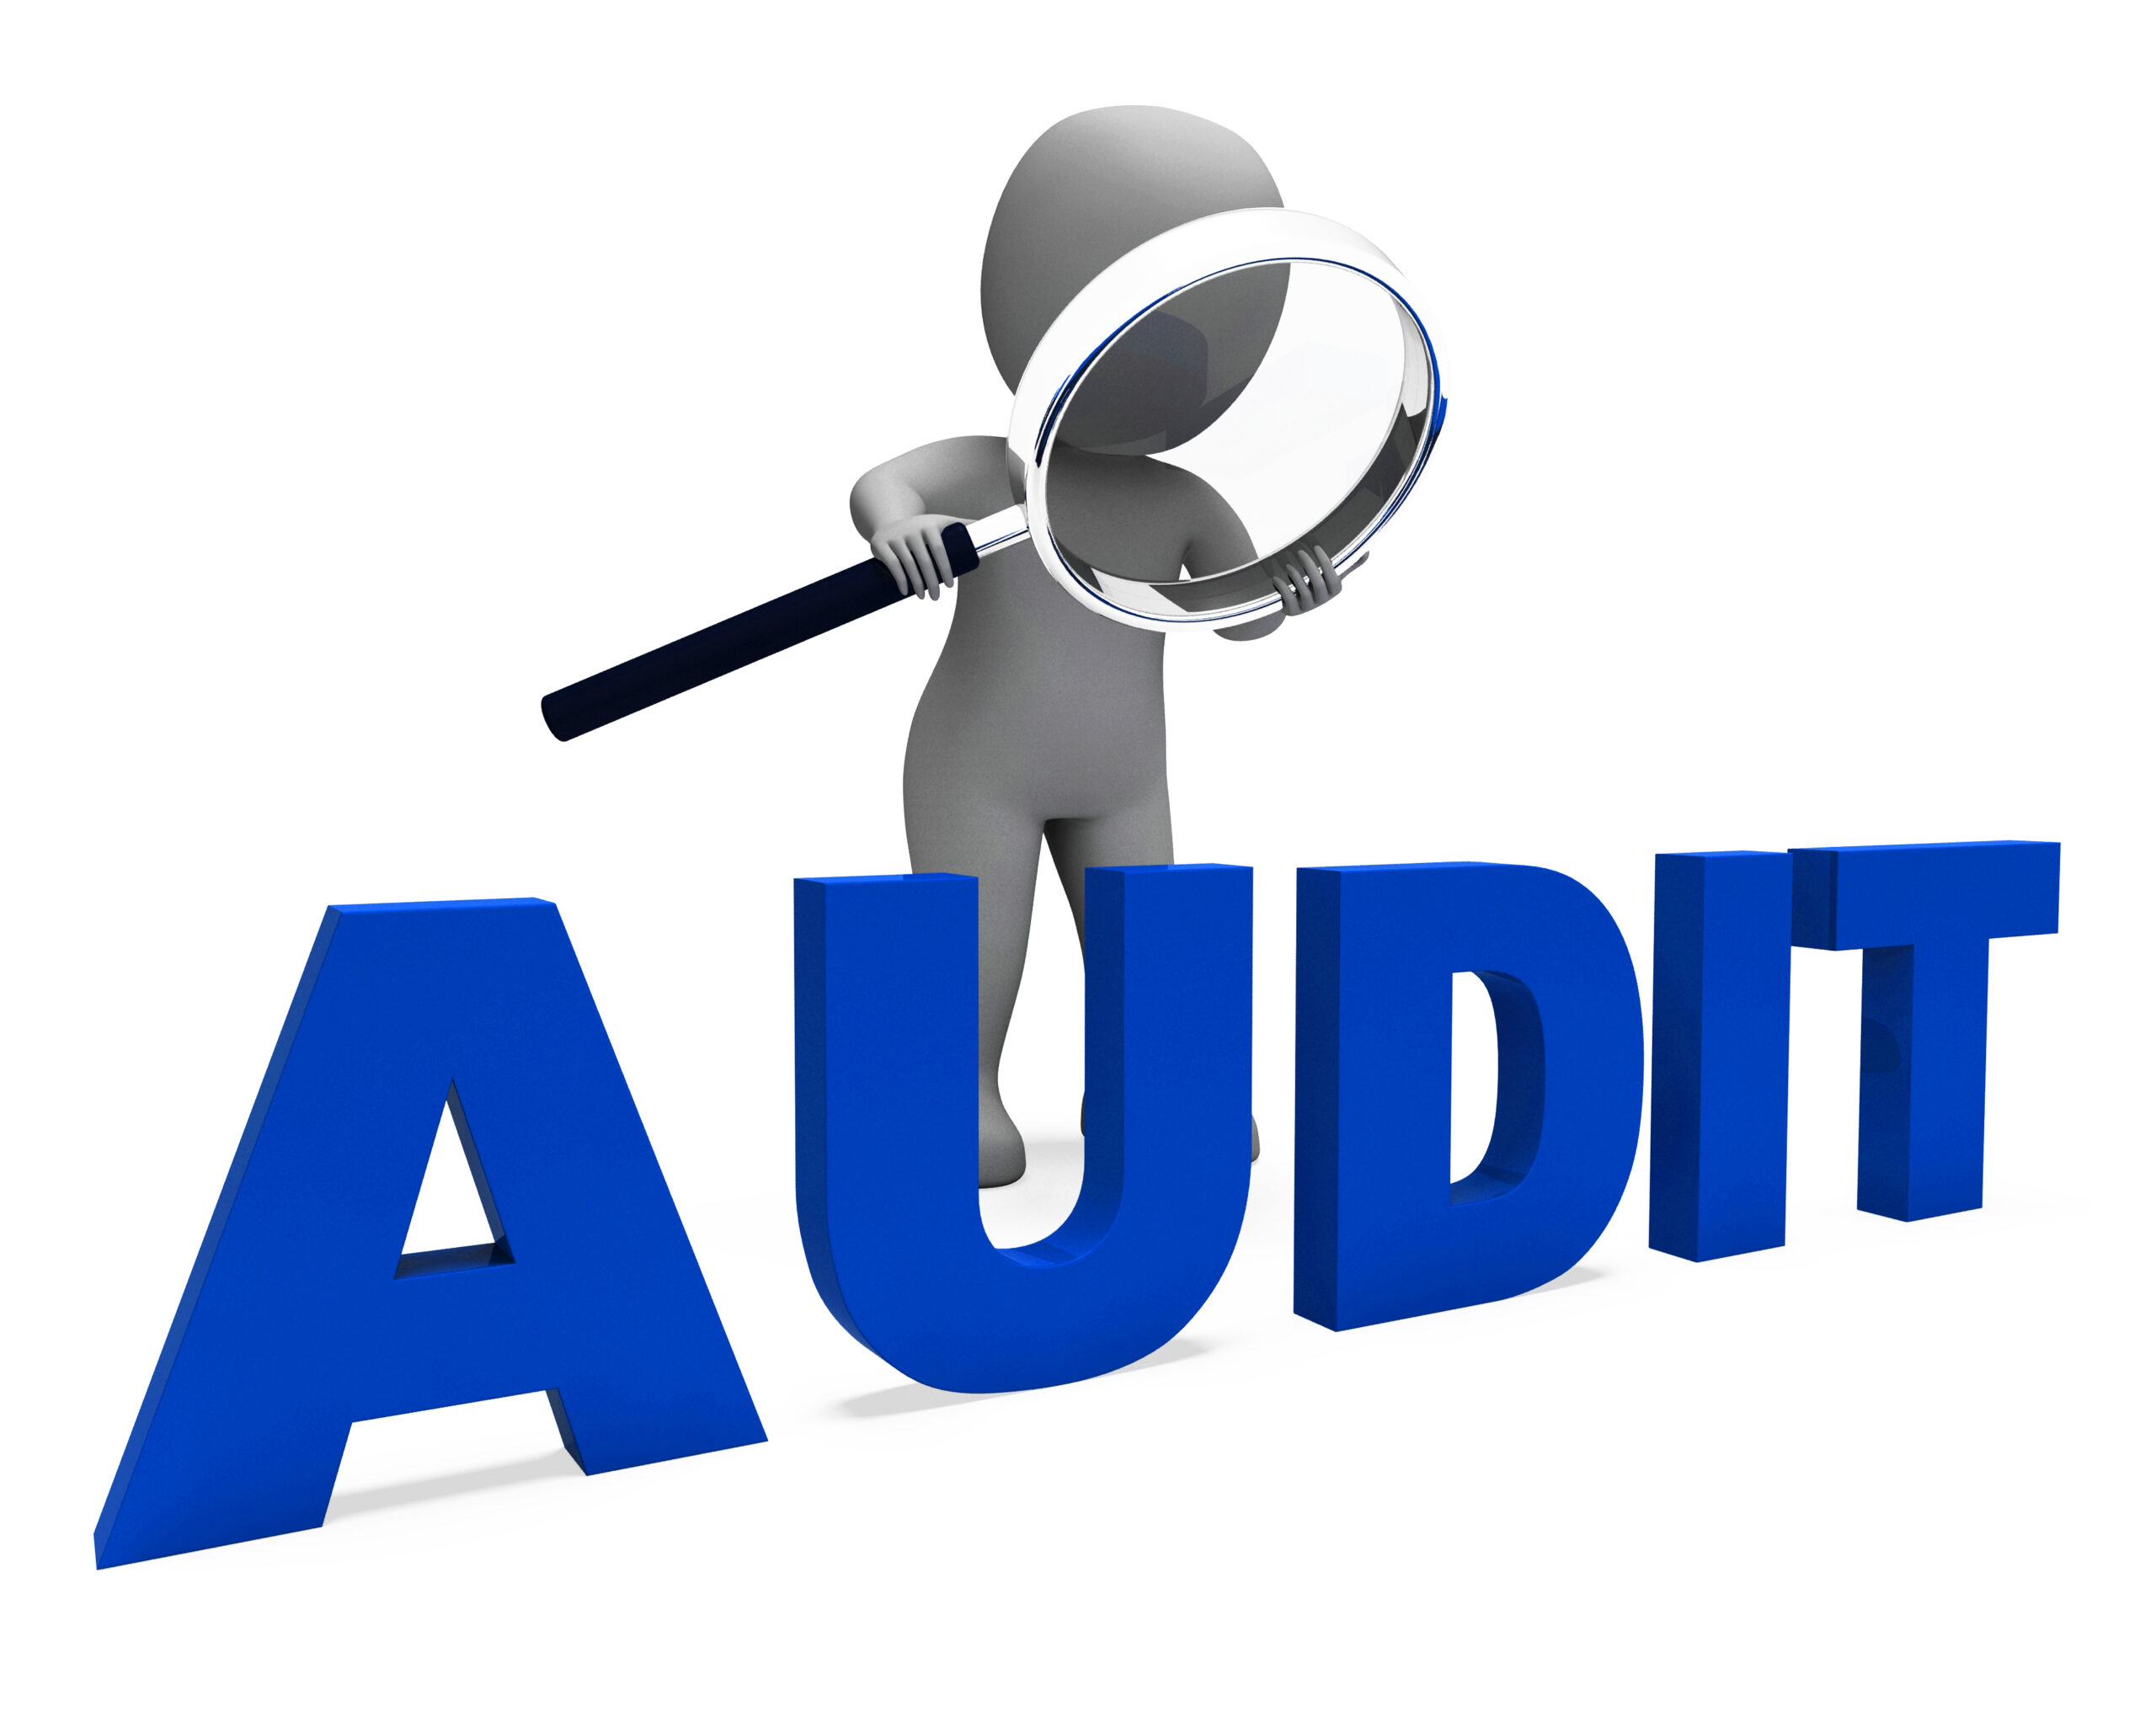 Procurement Questionnaires are an audit feature